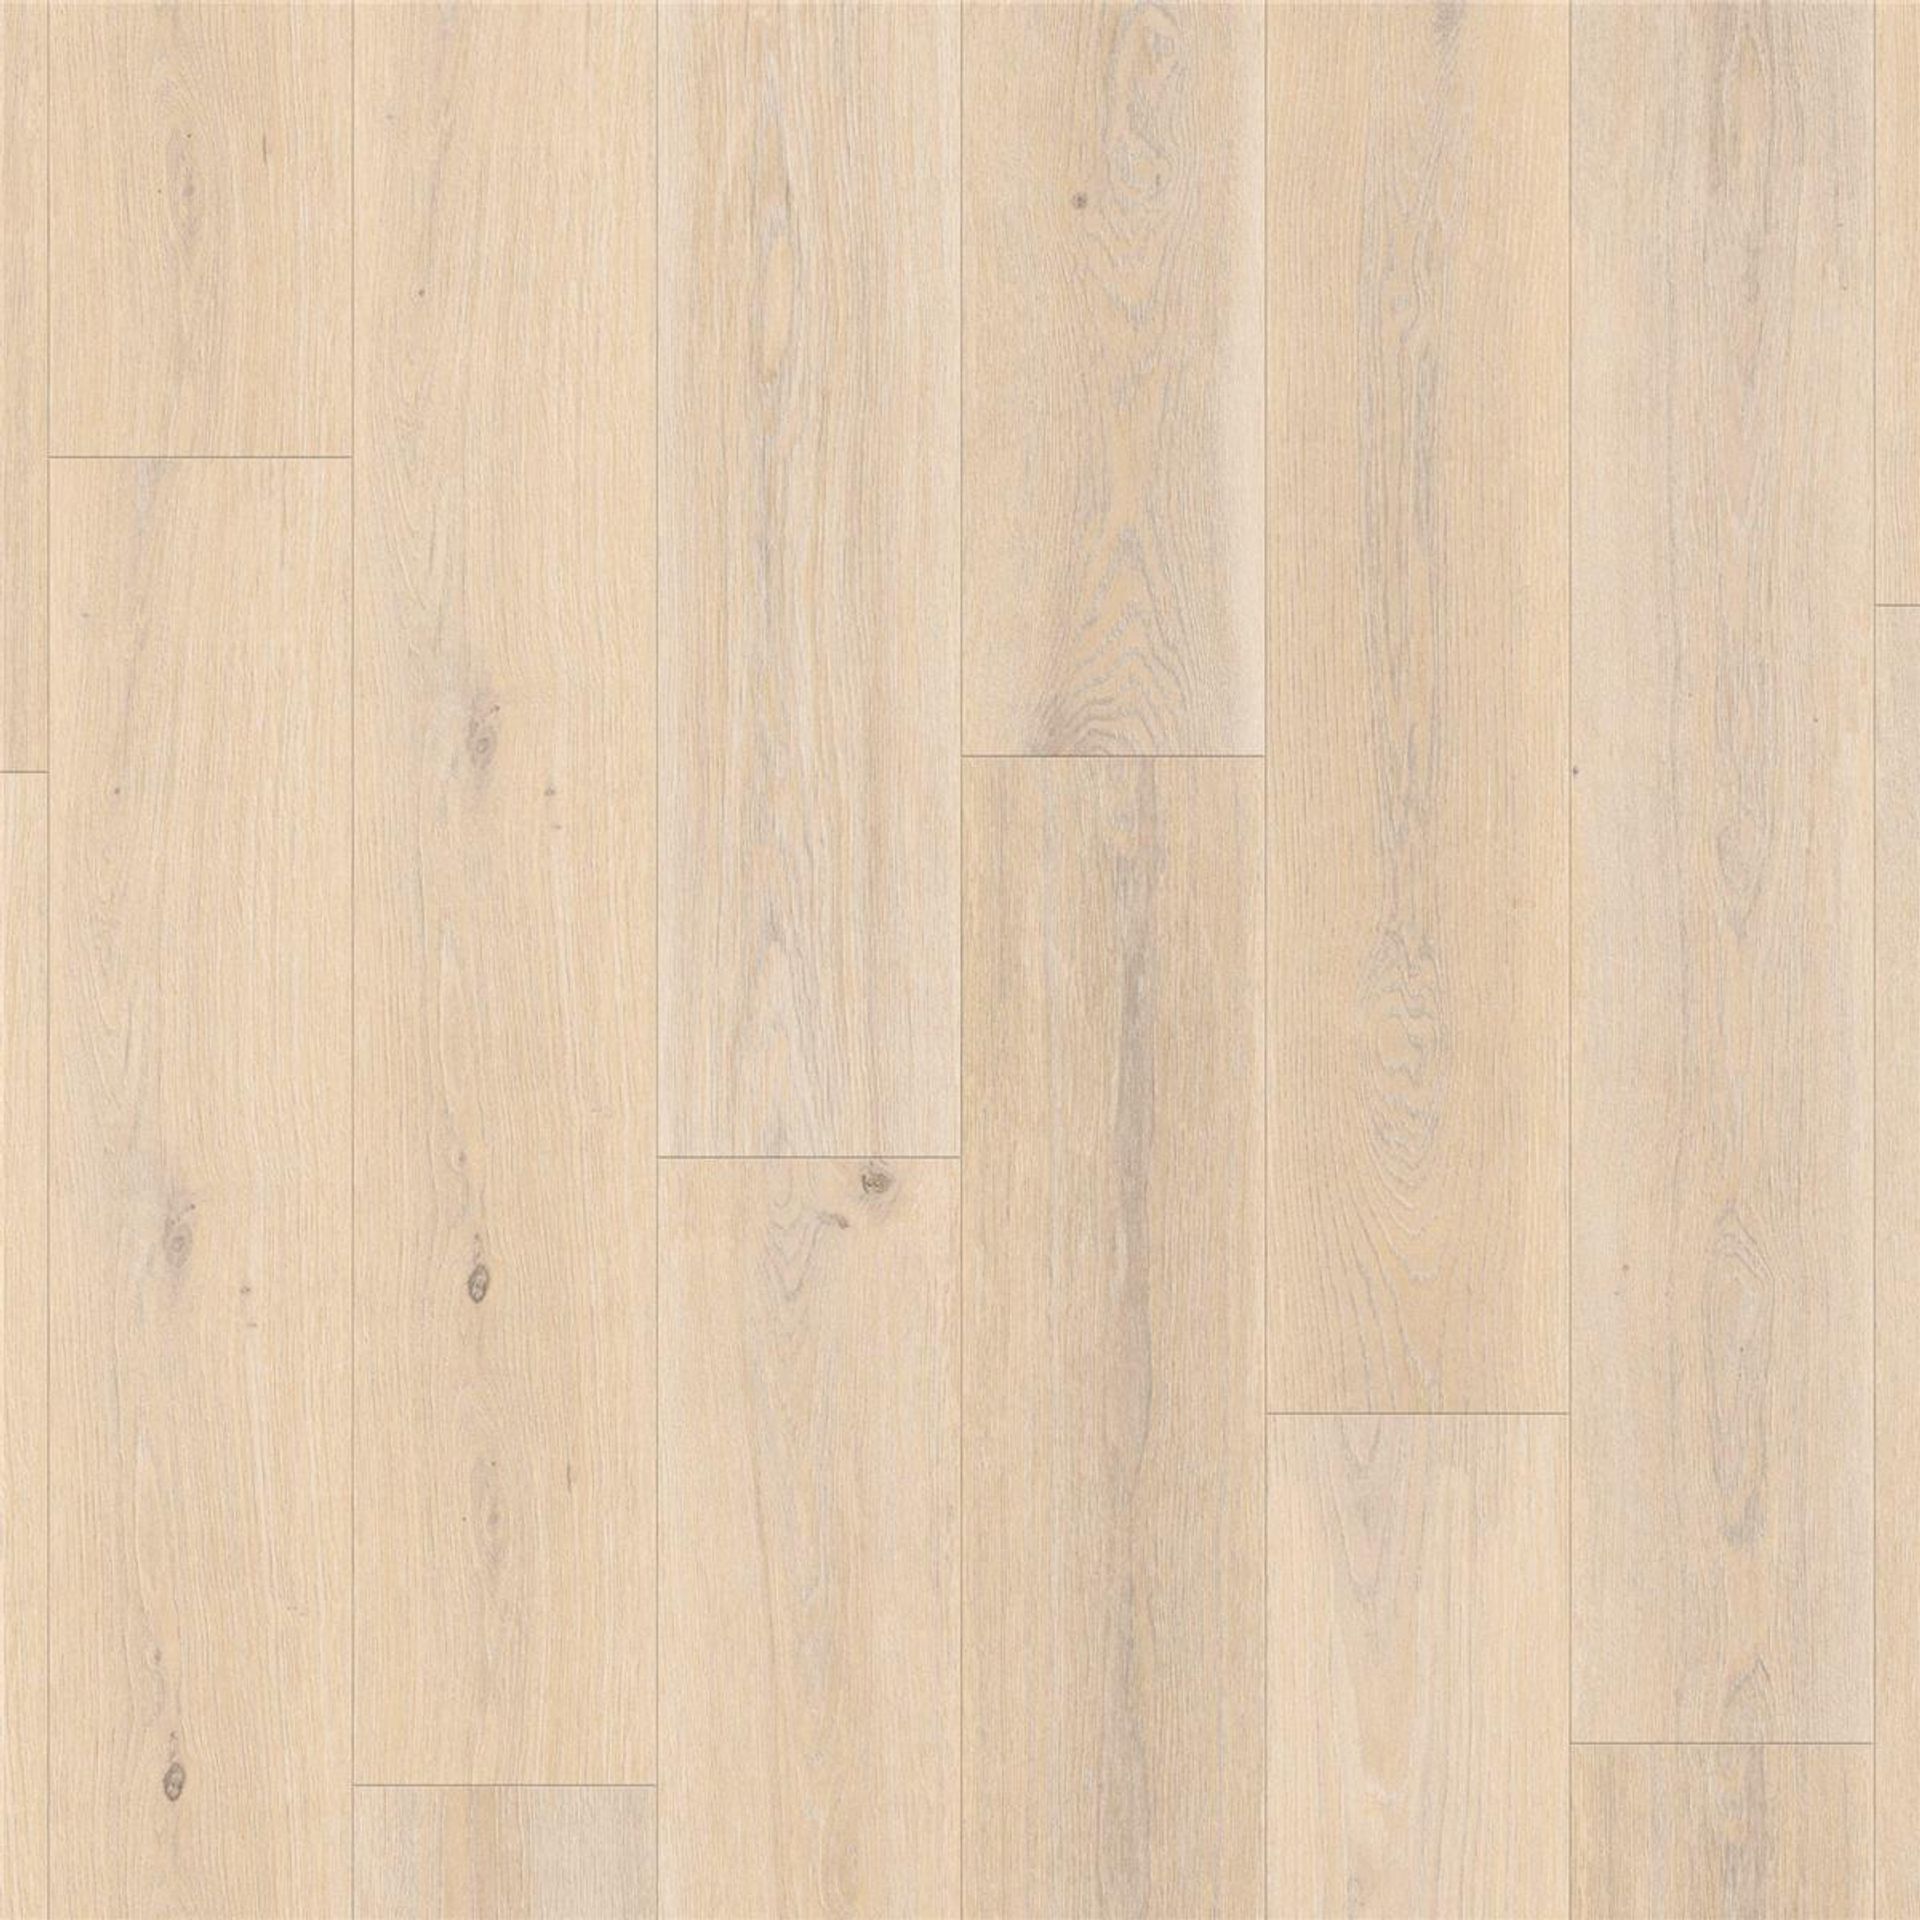 Designboden AUTHENTICS-Highland Oak-Cream Planke 121,1 cm x 19,05 cm - Nutzschichtdicke 0,55 mm